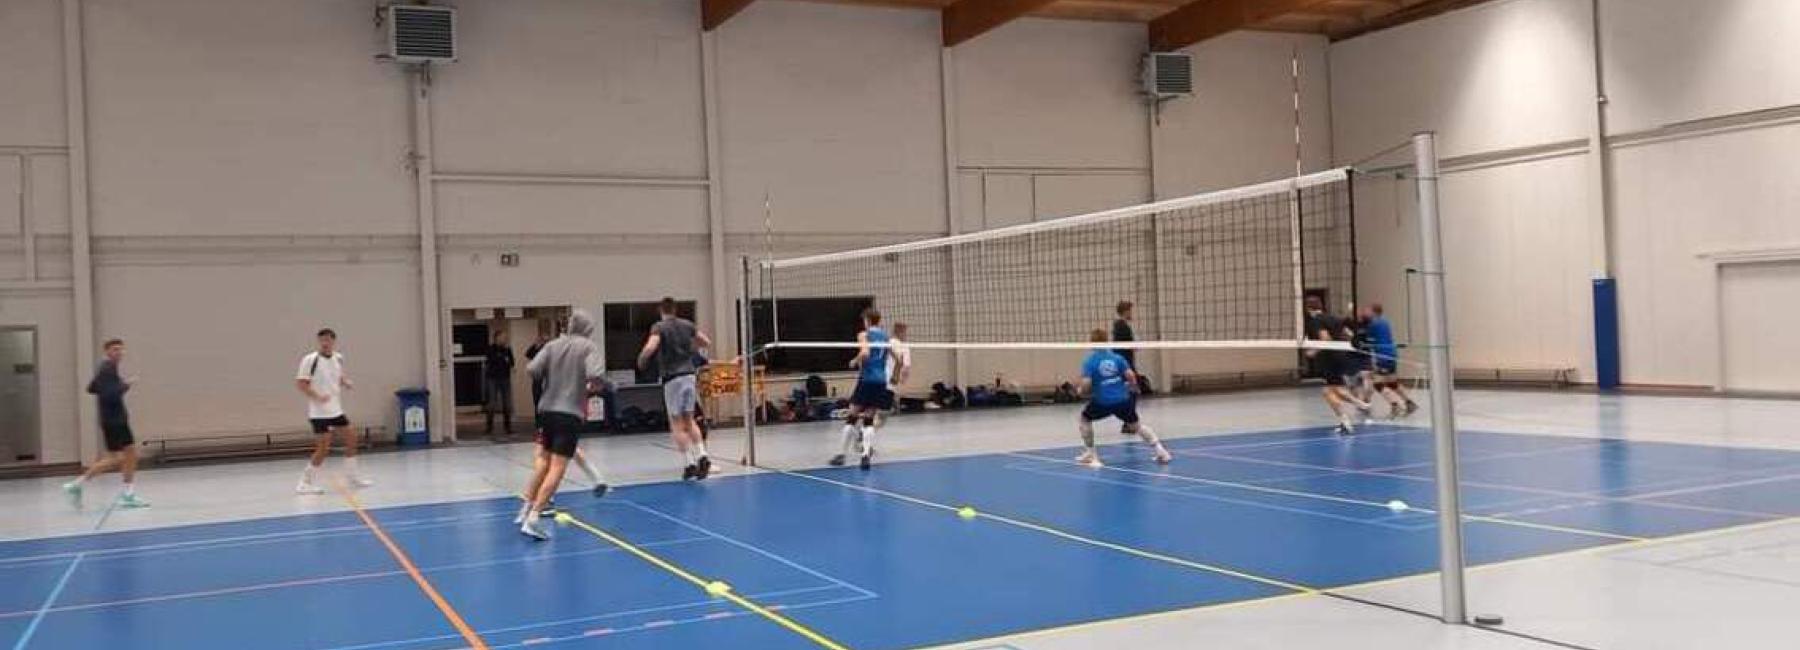 Salle de volley - Skill Tournai